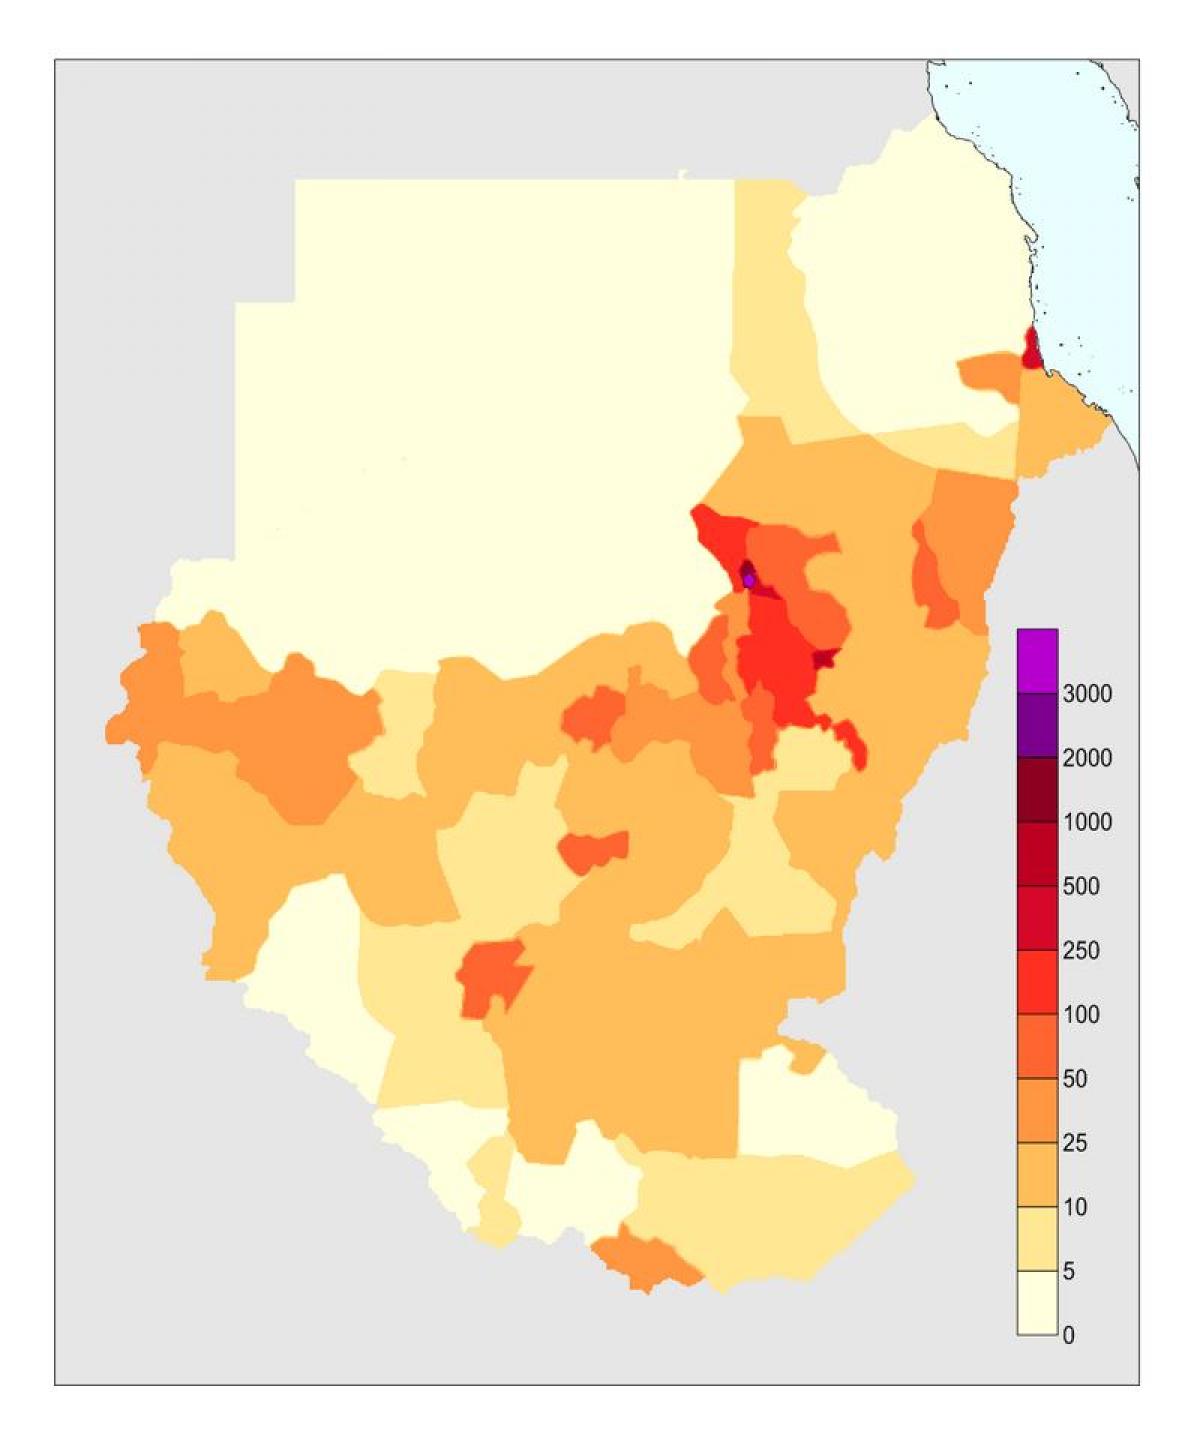 नक्शा सूडान की जनसंख्या